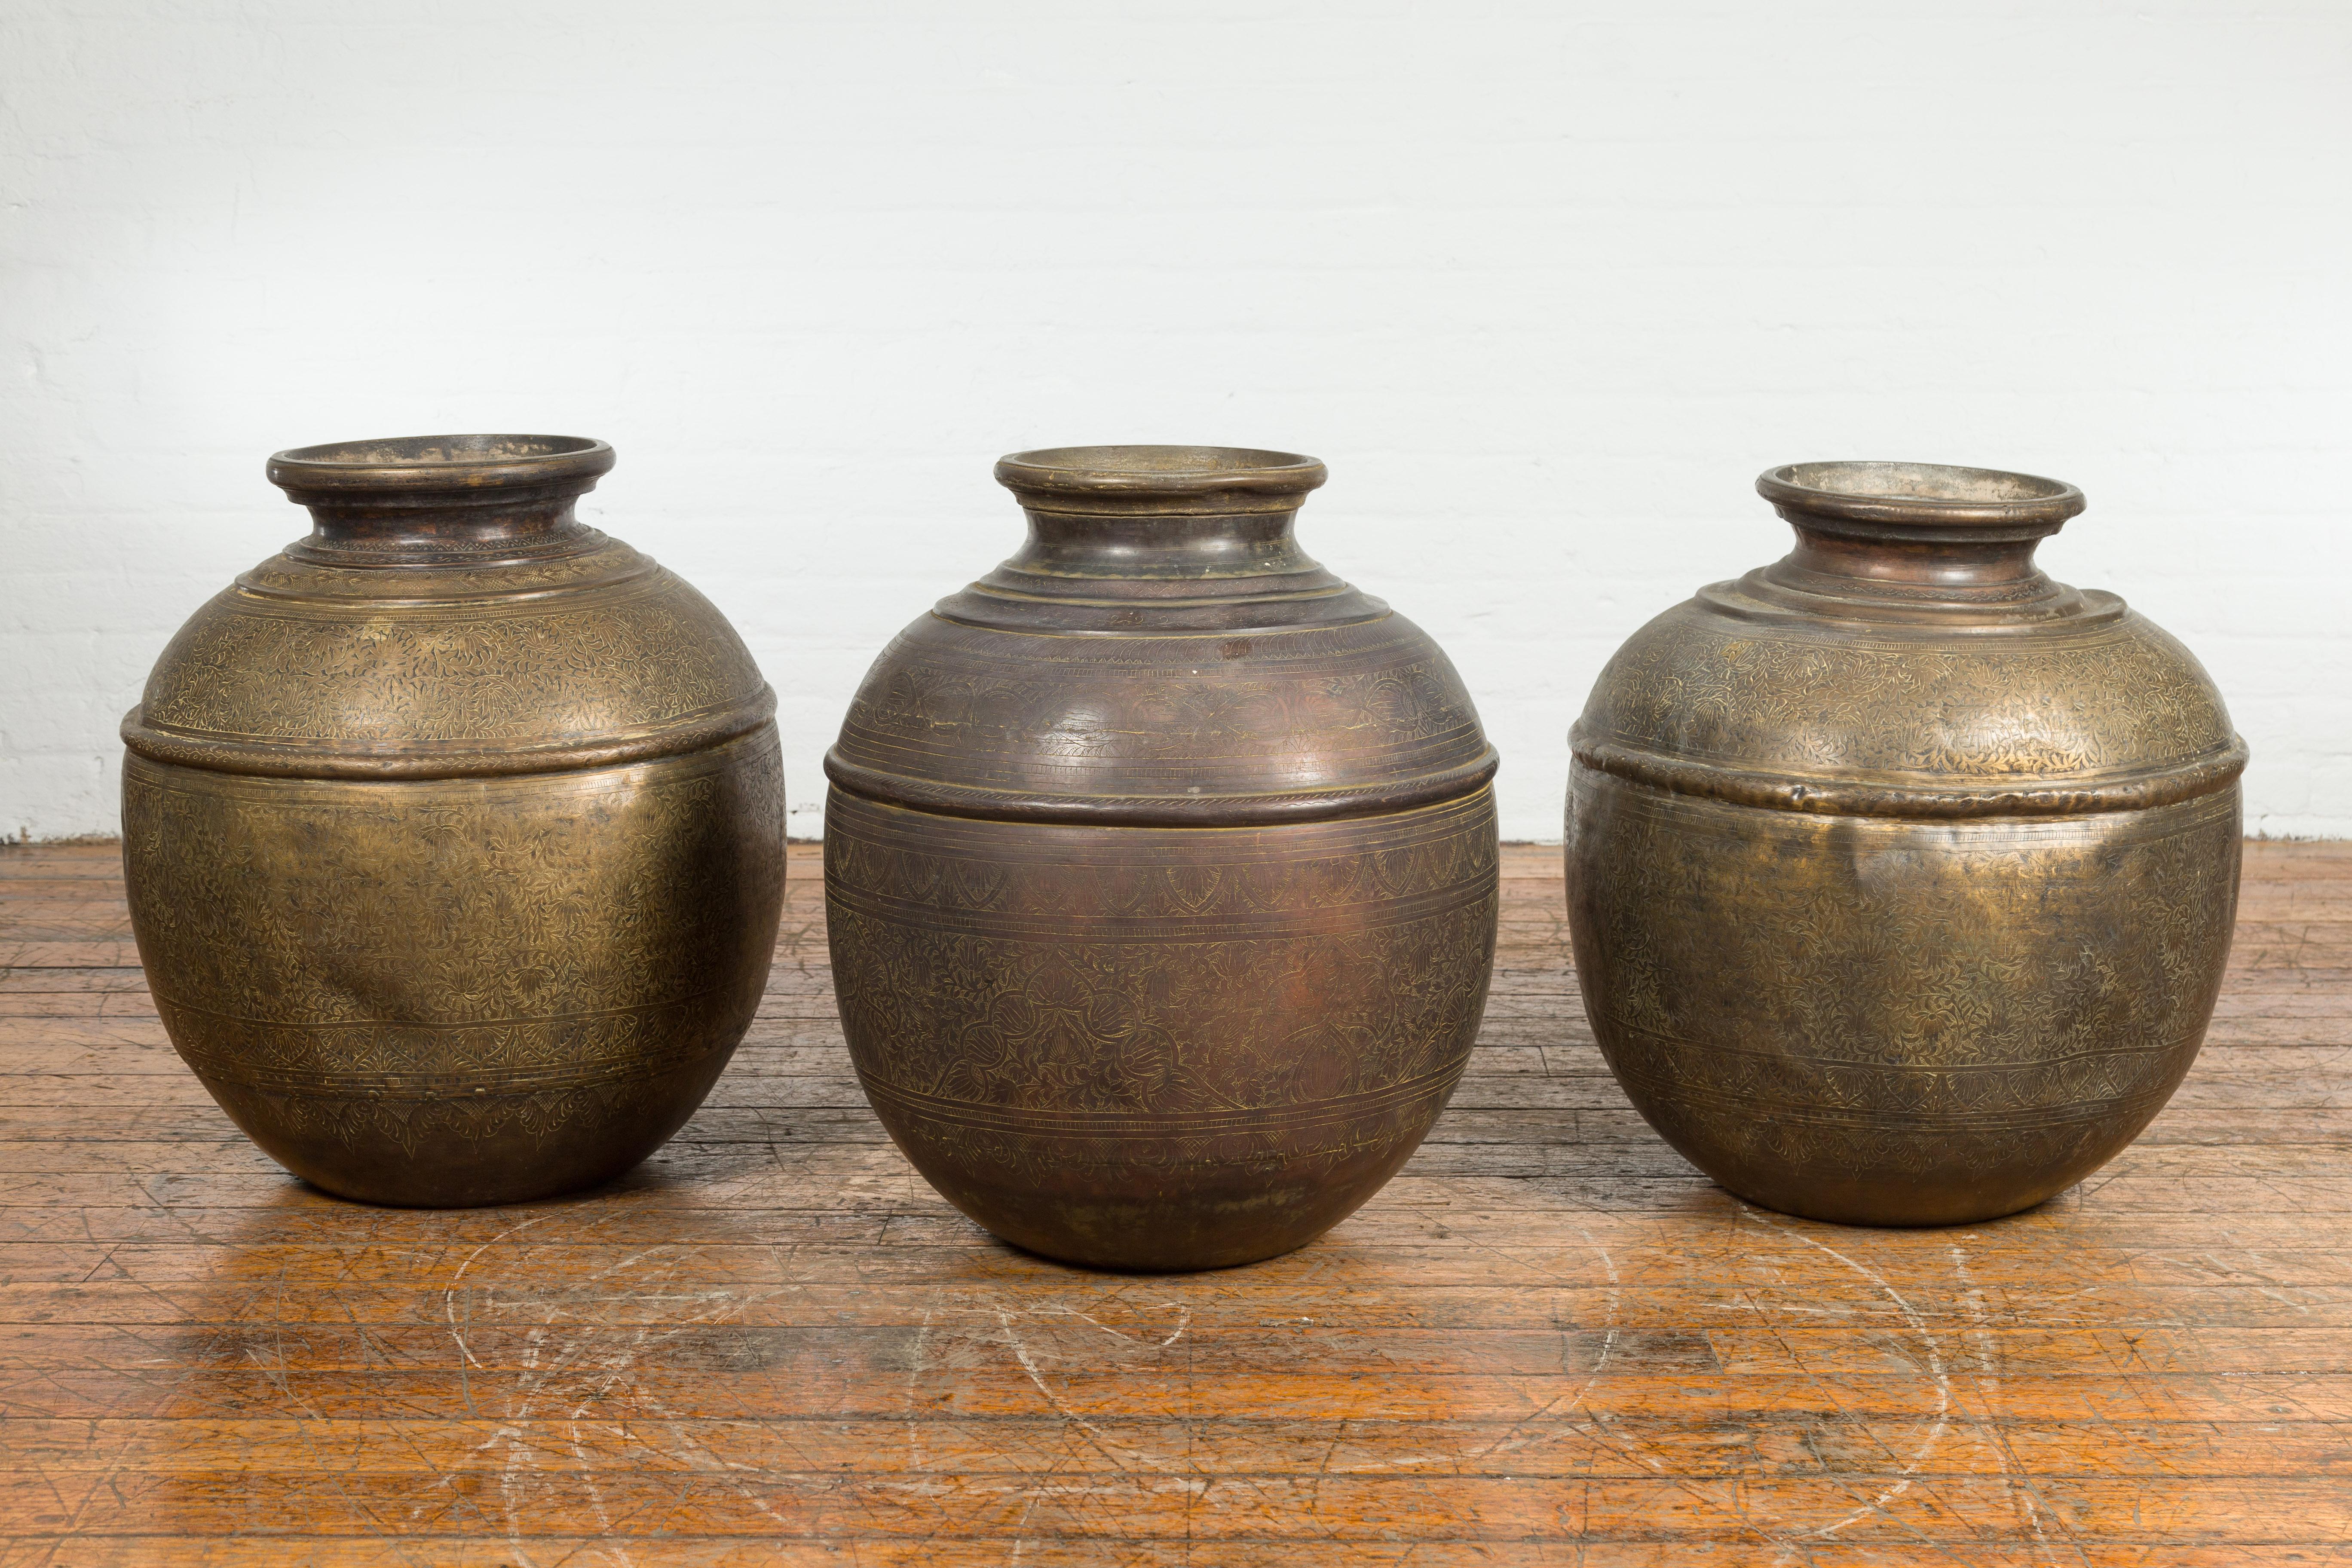 Trois vases à eau indiens anciens en laiton du 19e siècle, avec un décor floral gravé et un aspect usé par le temps. Nous fixons le prix et vendons ces produits individuellement. Créés en Inde au XIXe siècle, ces grands récipients d'eau en laiton